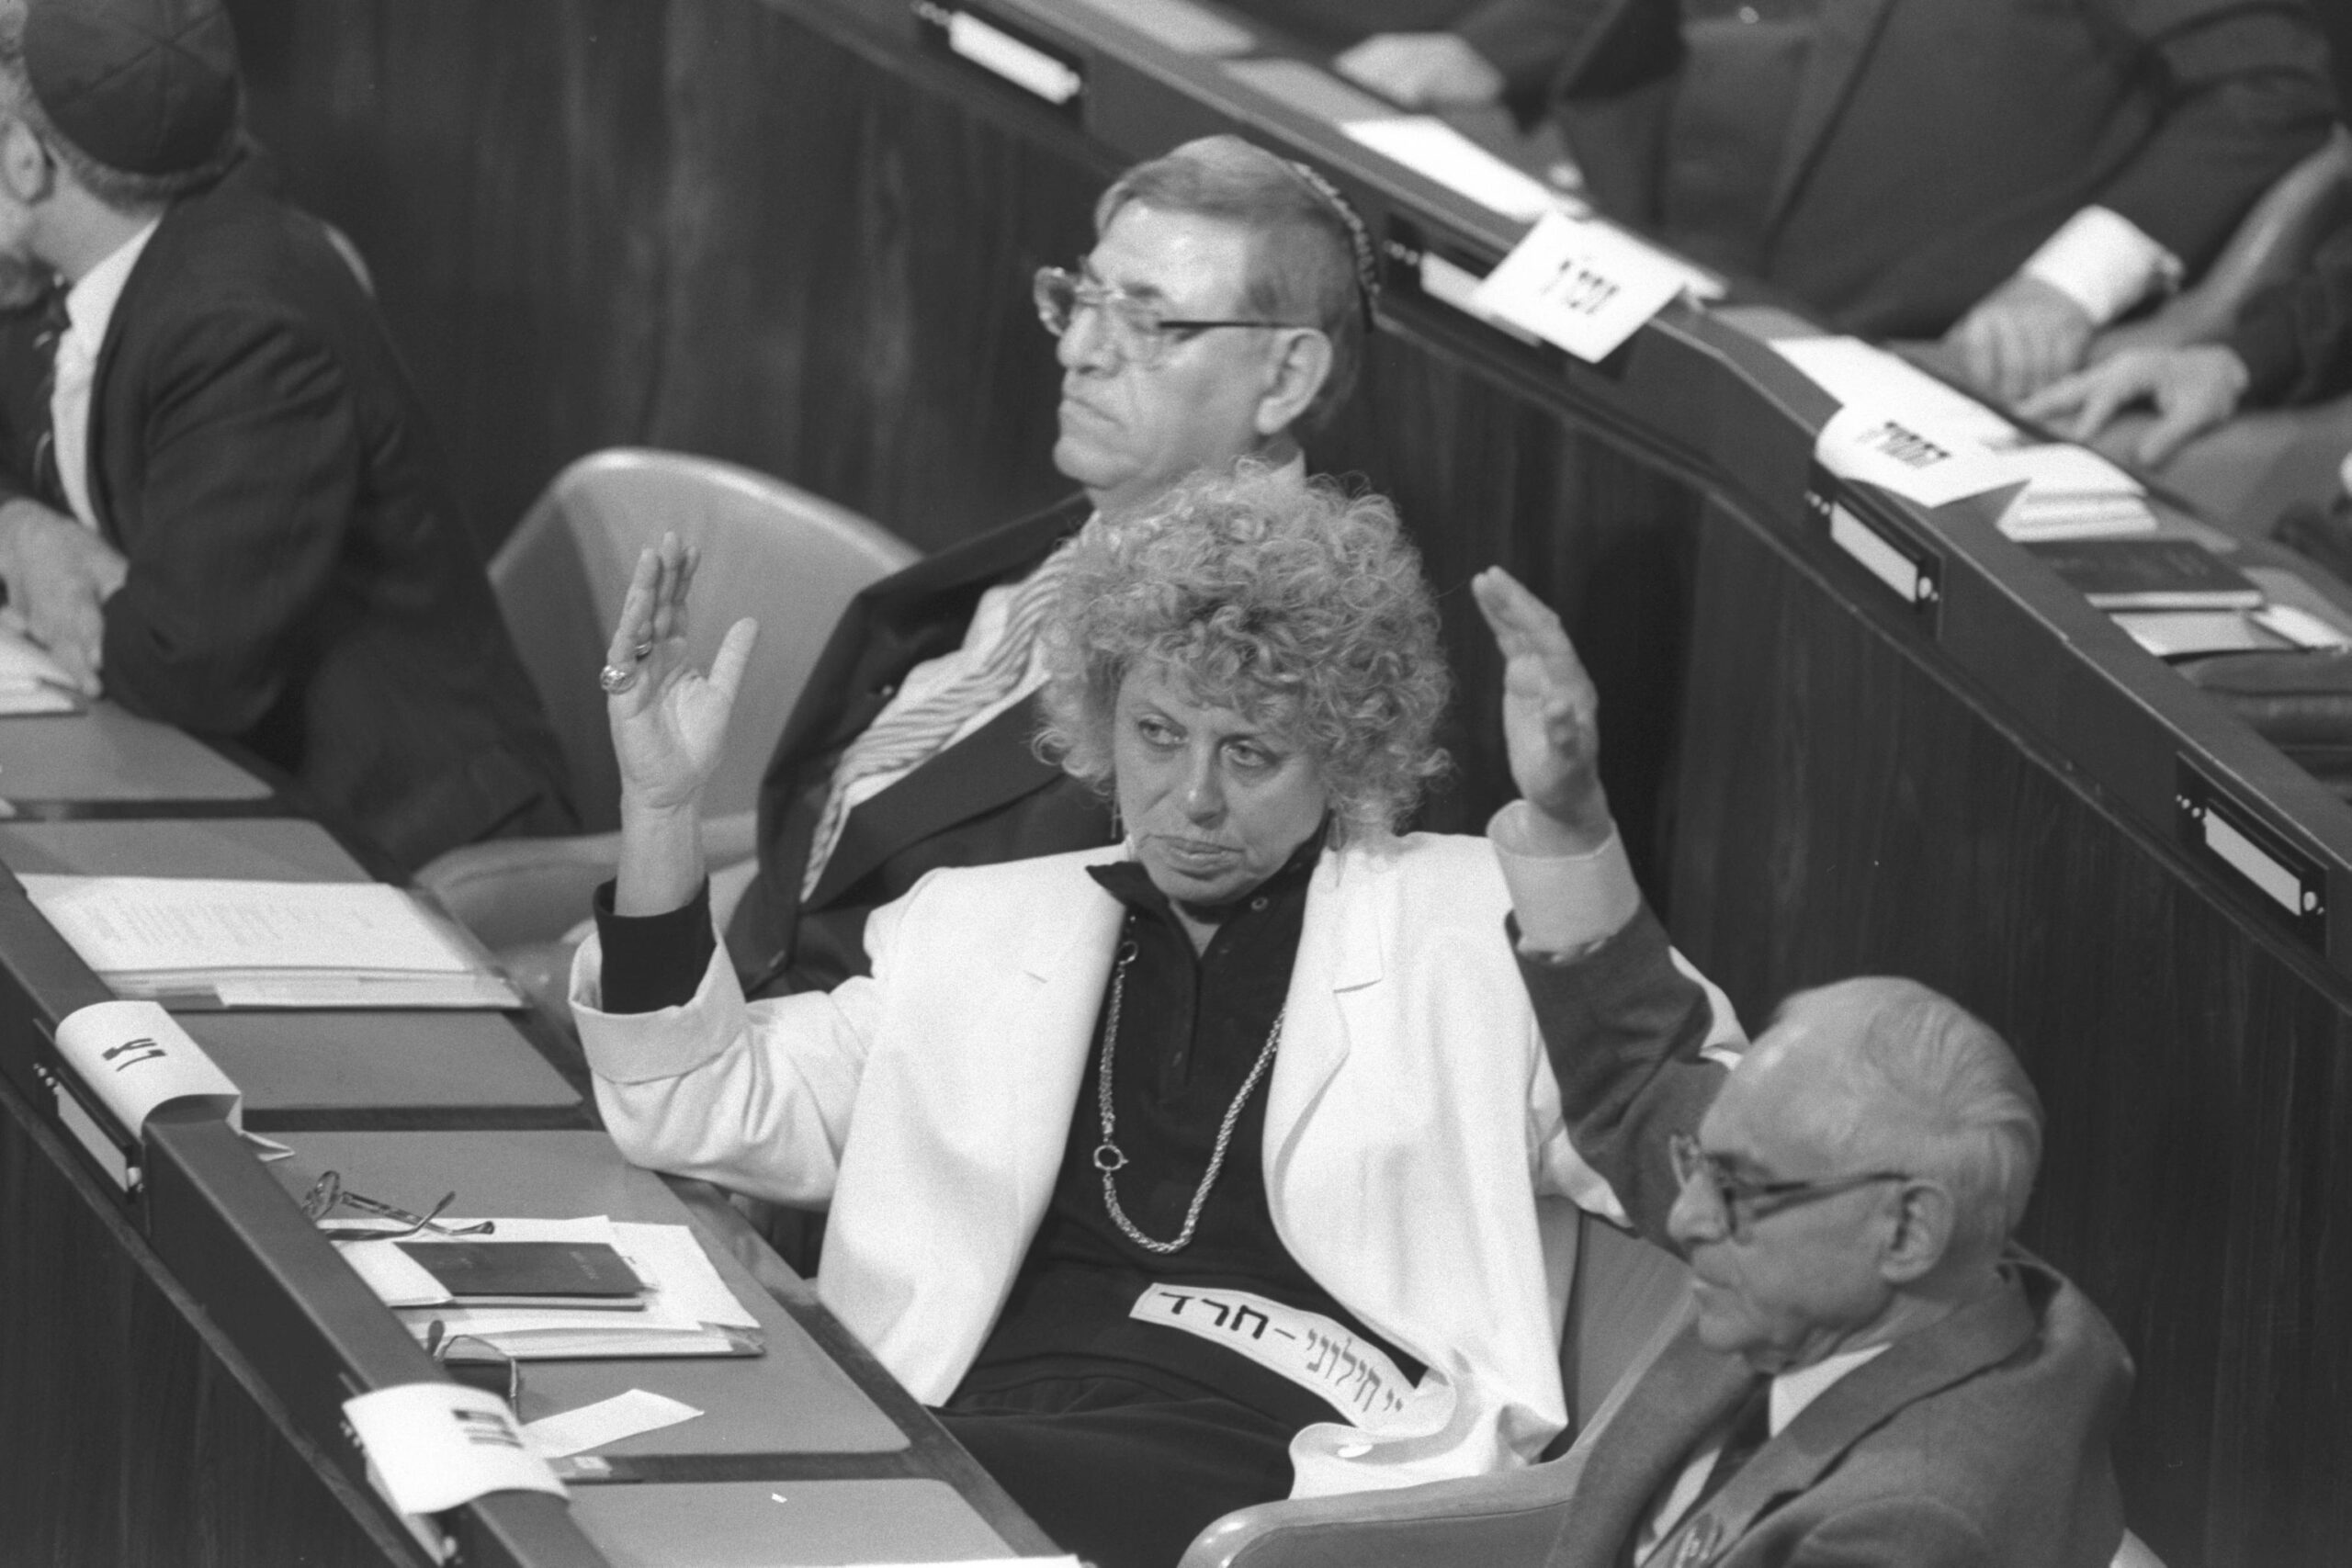 שולמית אלוני בפתיחת מושב הכנסת בירושלים, ב-1988 (צילום: סער יעקב, לע"מ)